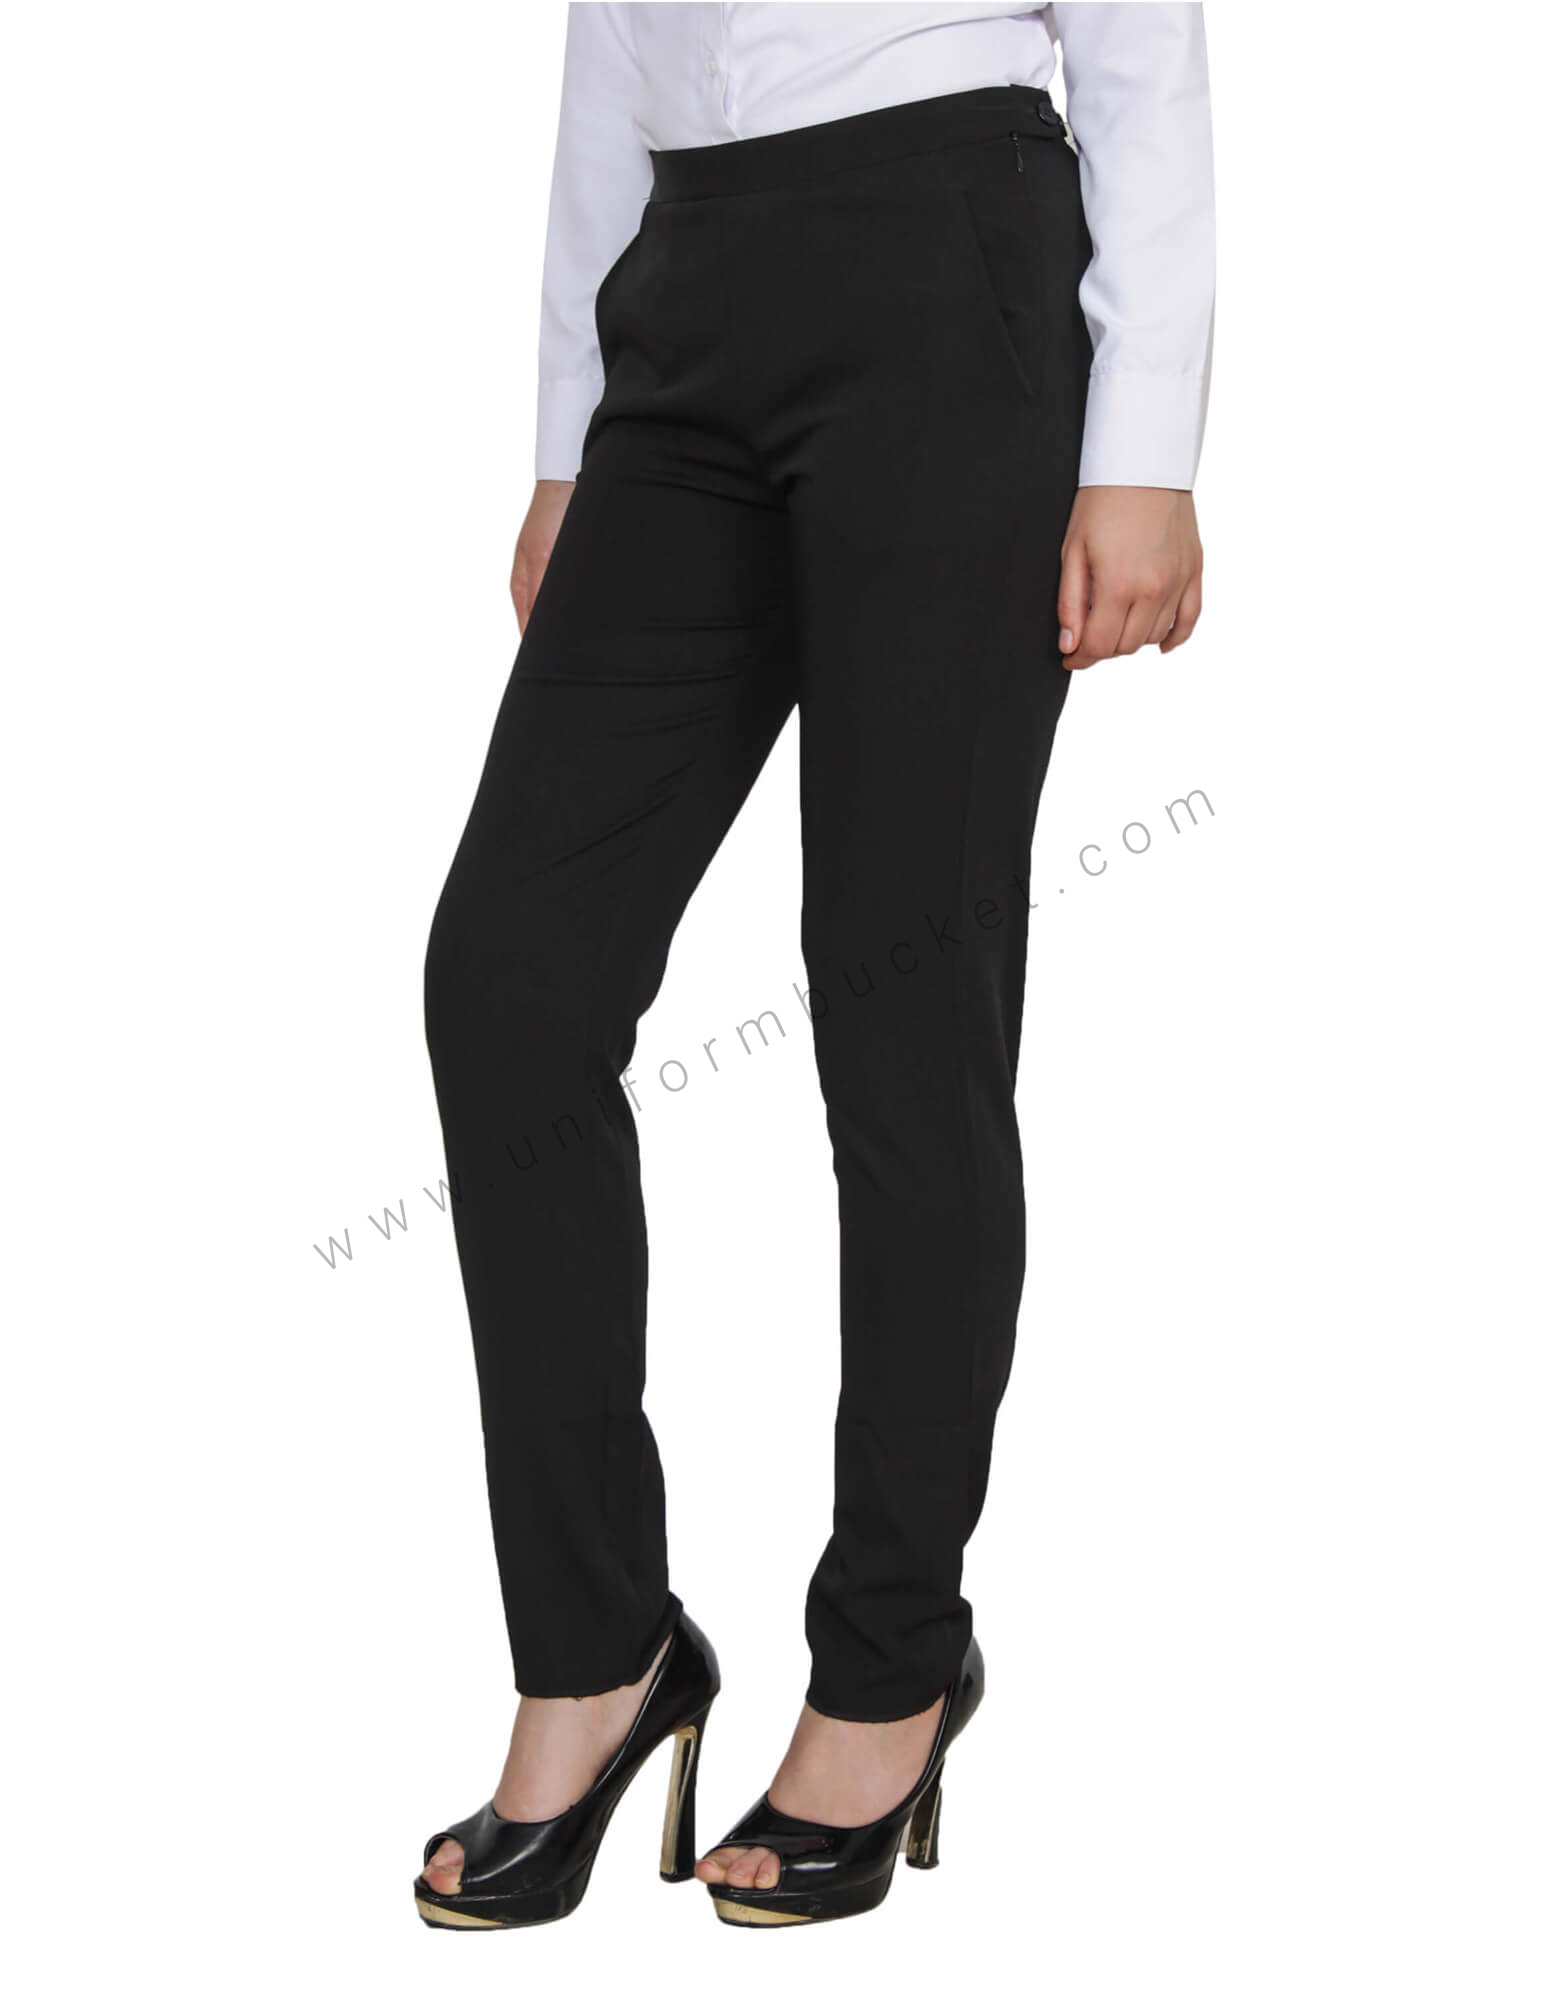 Charlotte Flat Front Comfort Waist Tropical Jet Black Pants - M&H Uniforms